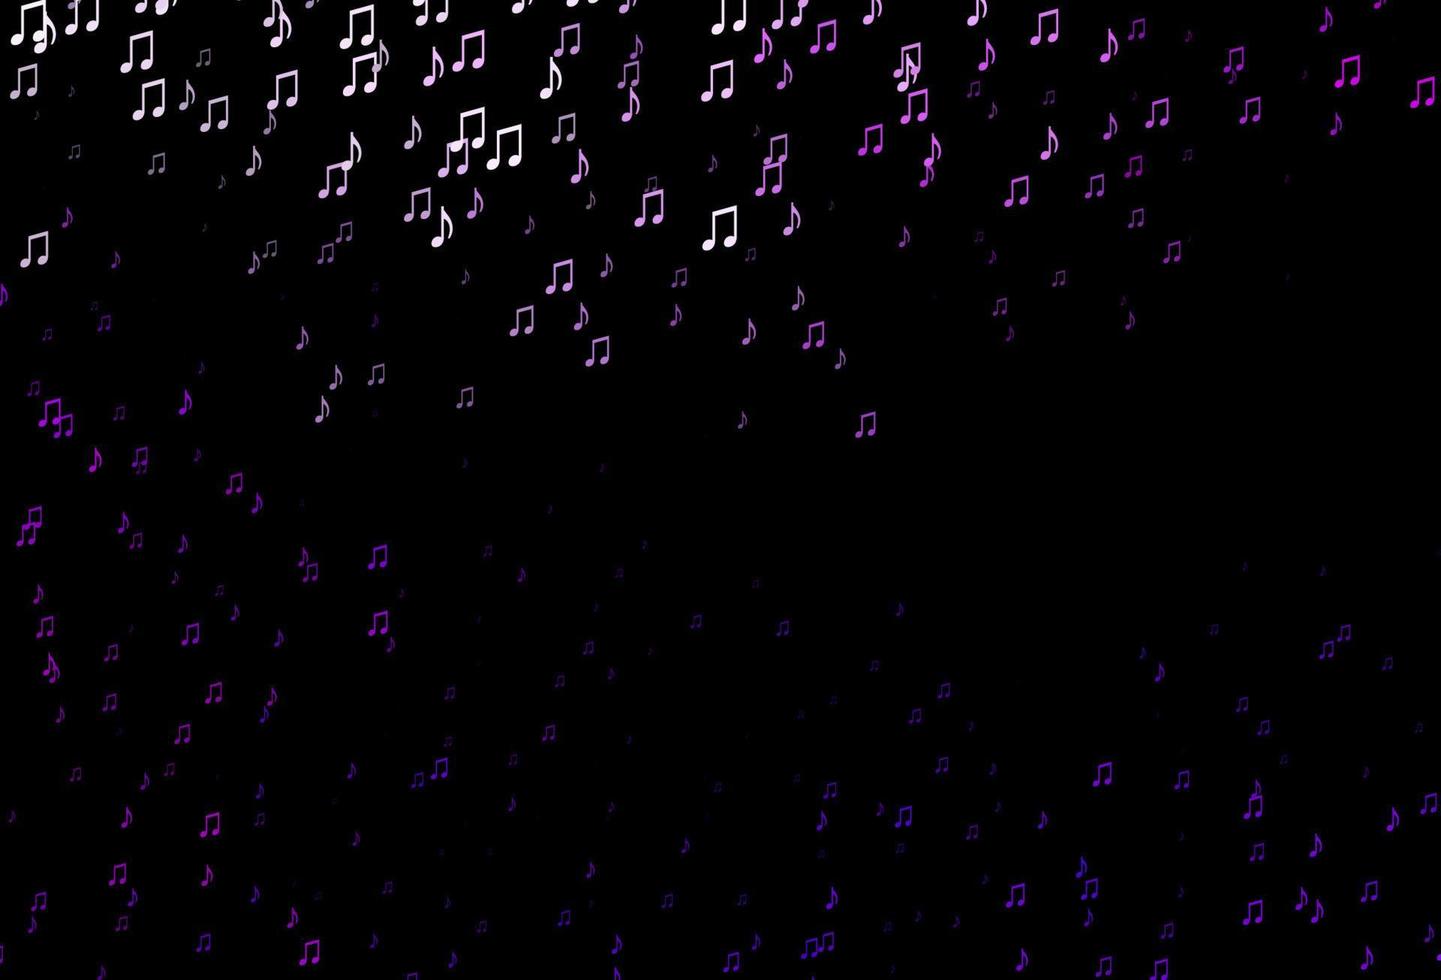 telón de fondo de vector púrpura oscuro con notas musicales.